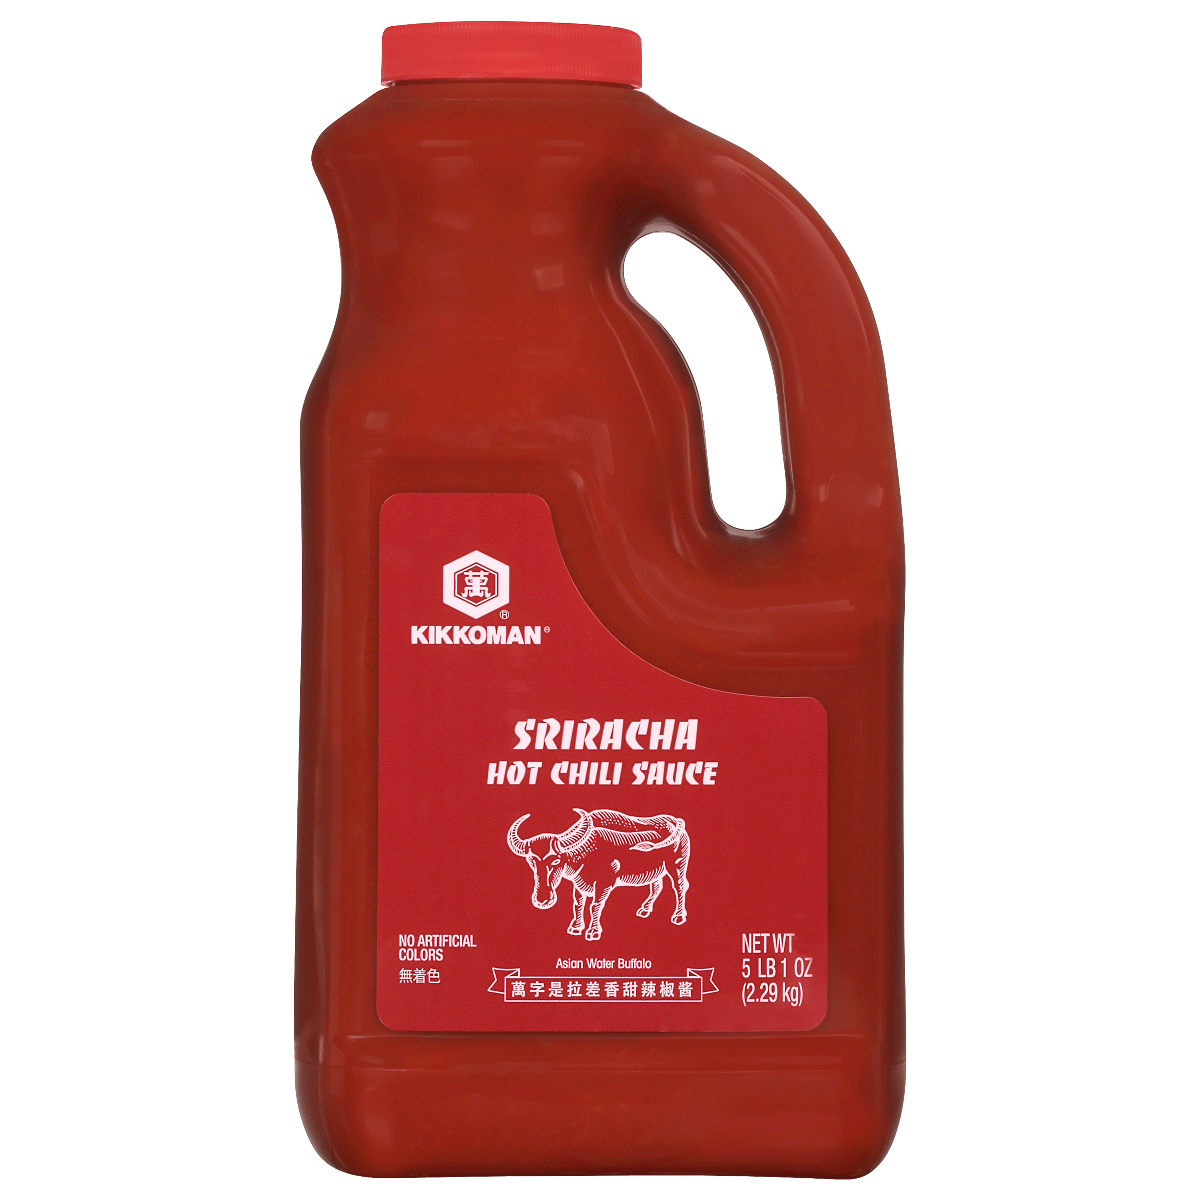 5 LBS Sriracha Hot Chili Sauce - Plastic bottles